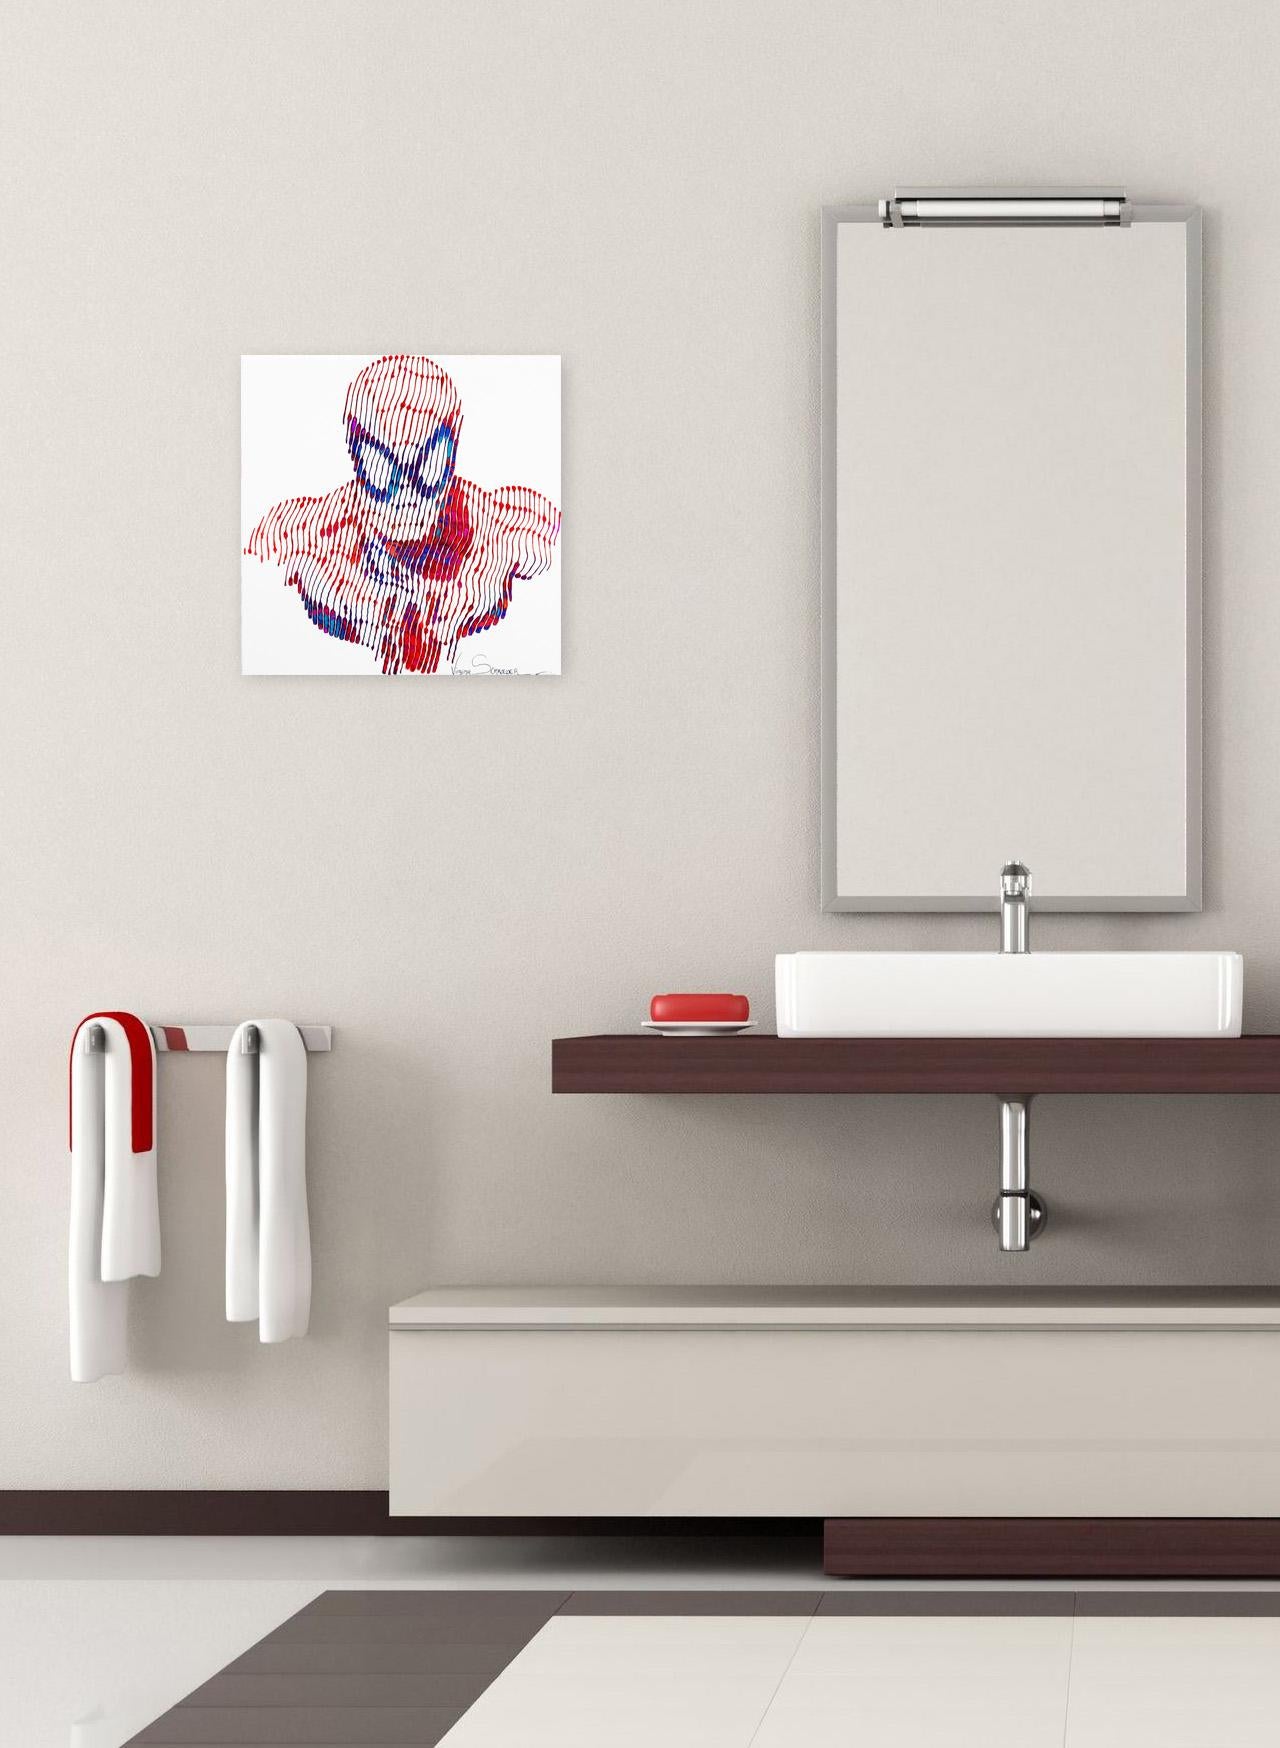 Spiderman The Beginning - Painting by Virginie Schroeder